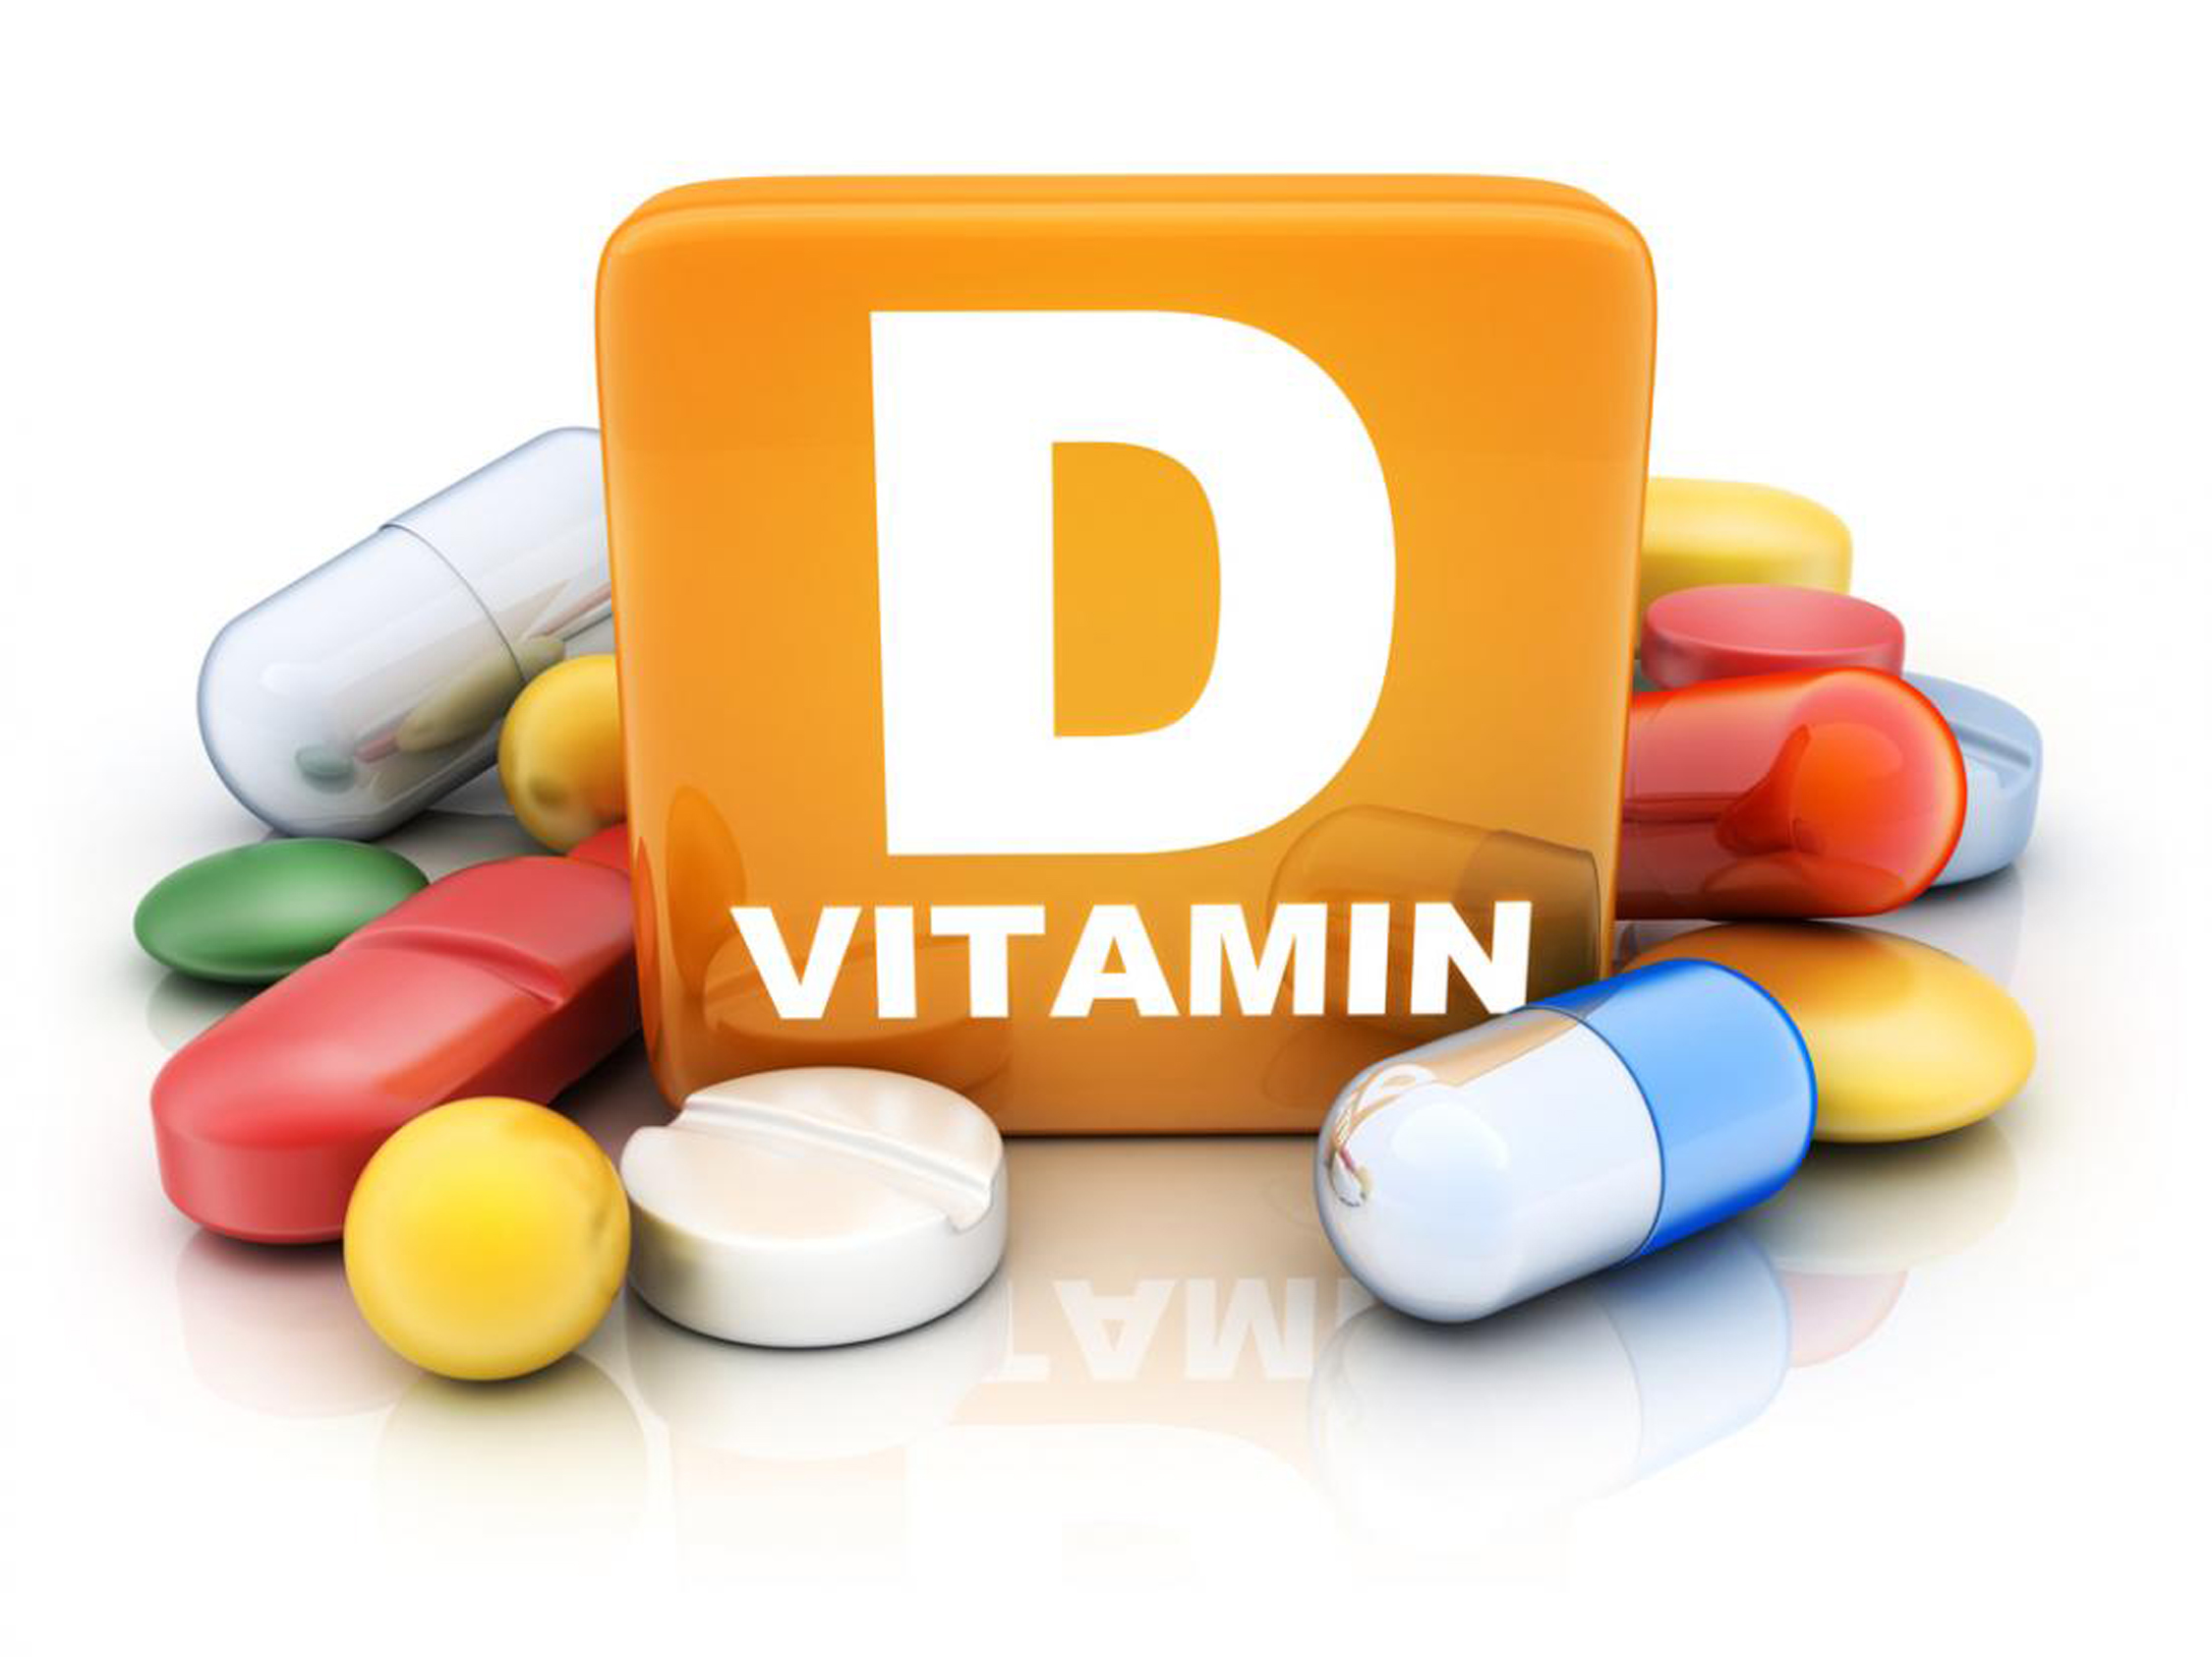 विटामिन डी का डोज कमजोर करेगा कोरोना की चेन, संक्रमण रोकने में मिलेगी सफलता